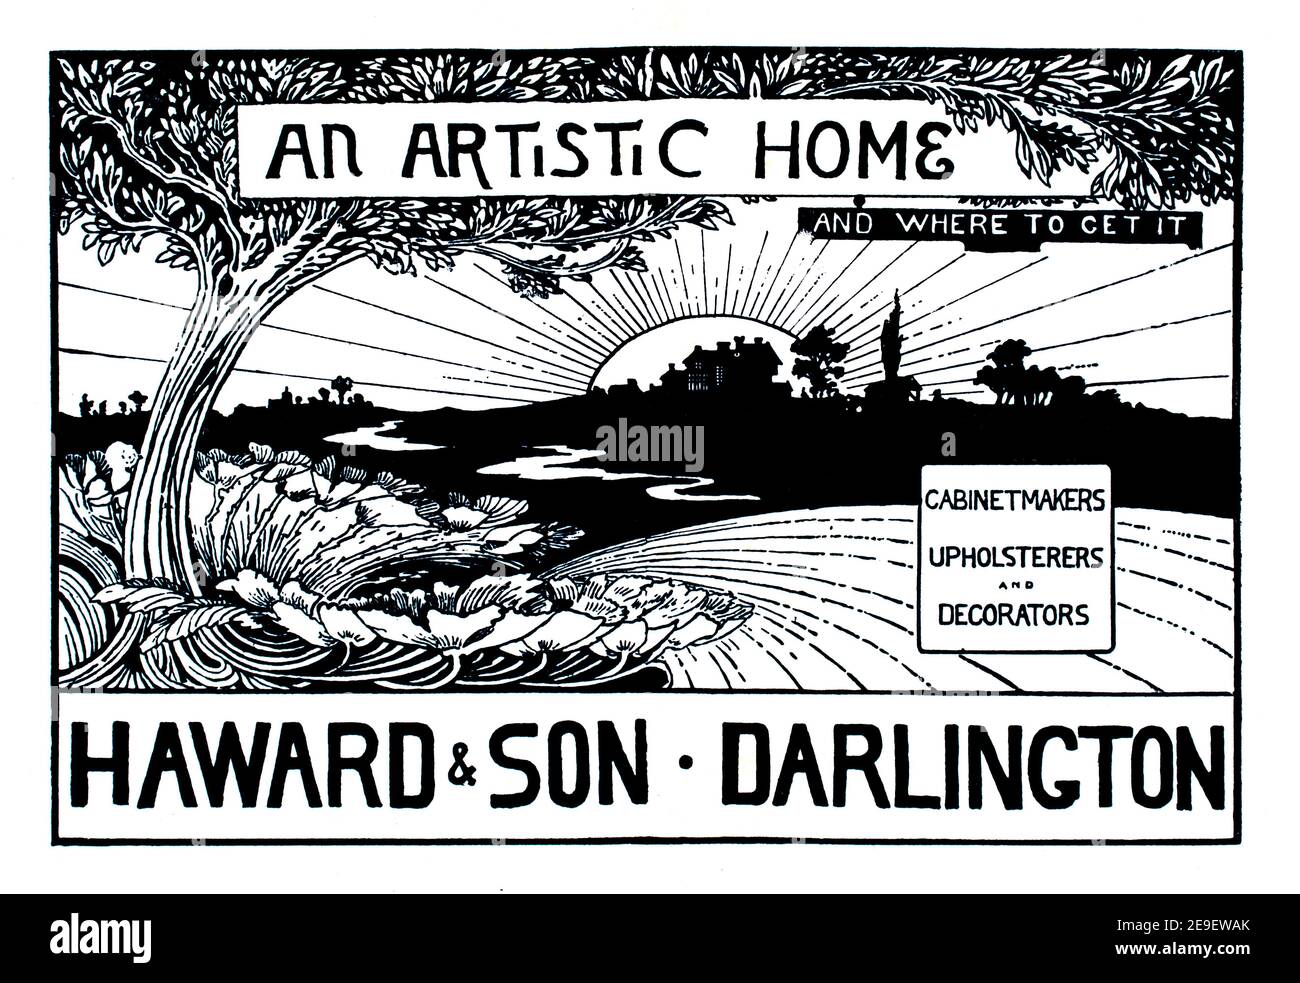 Une maison artistique et où l'obtenir, publicité de conception d'affiches pour Howard et son, ébénistes, tapissiers et décorateurs de Darlington par Arthur Banque D'Images